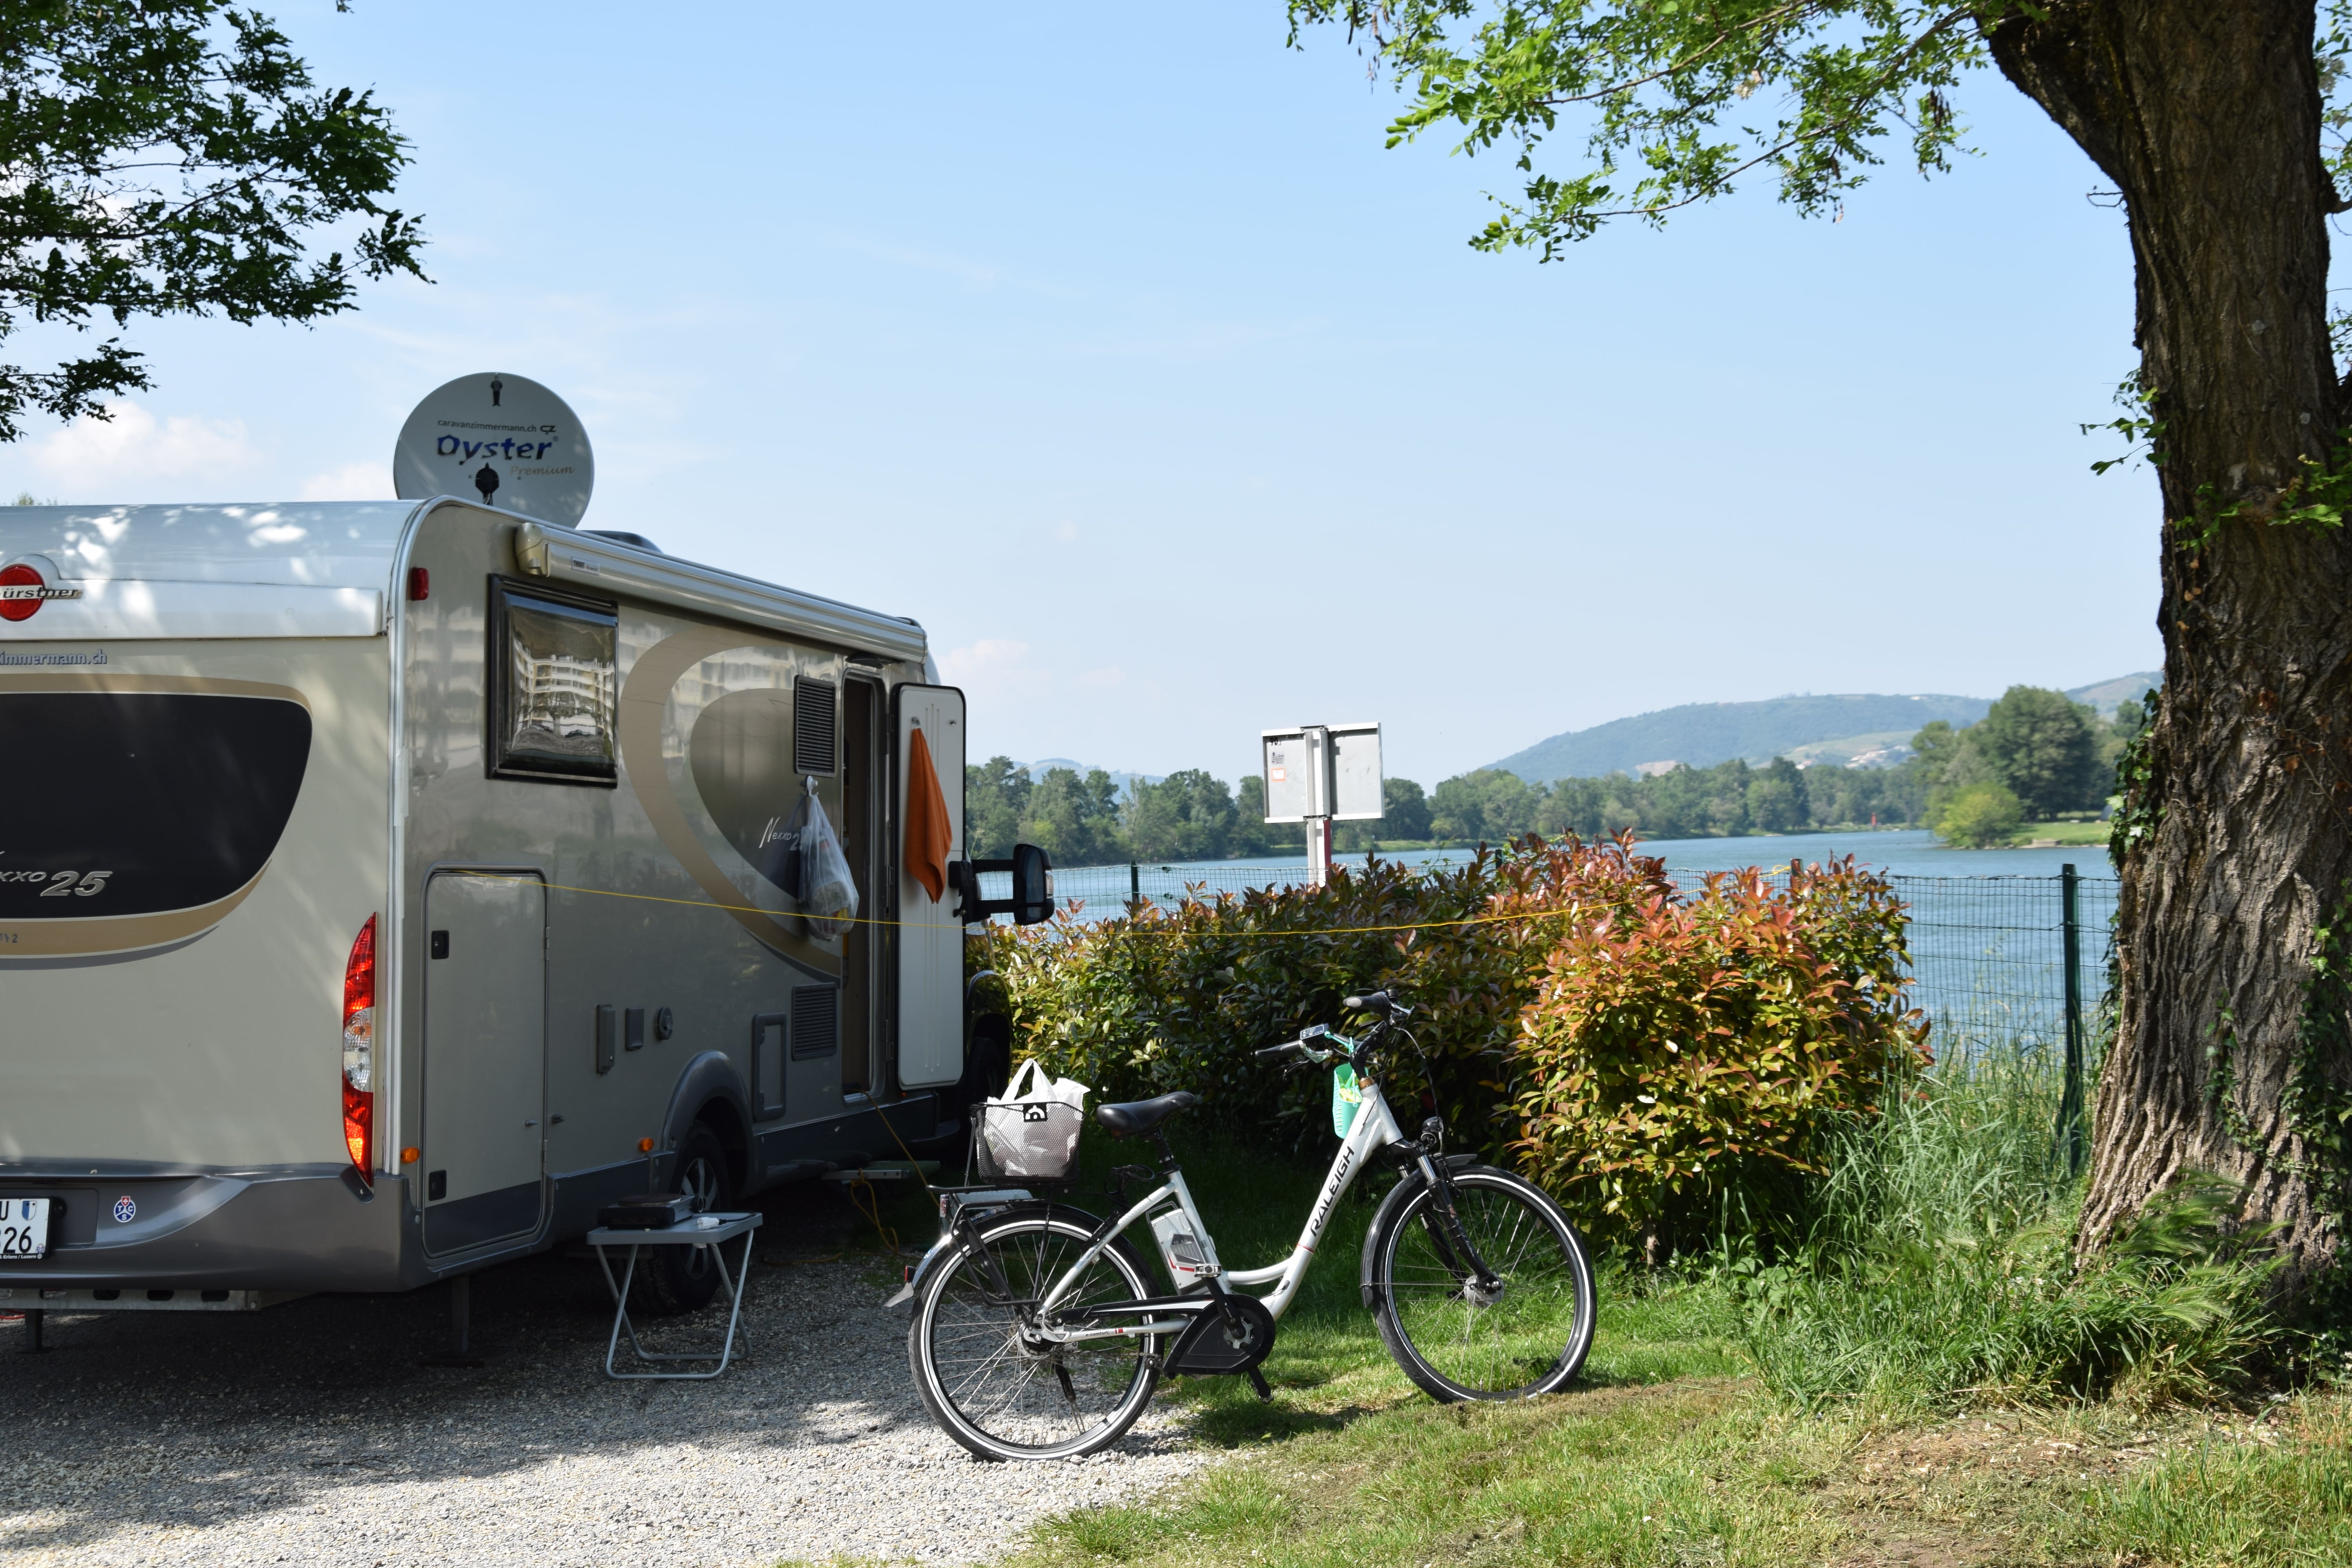 Emplacement - Emplacement Camping-Car/Caravane (Double Essieux Non Acceptées)/Tente+Voiture - Camping Le Rhône